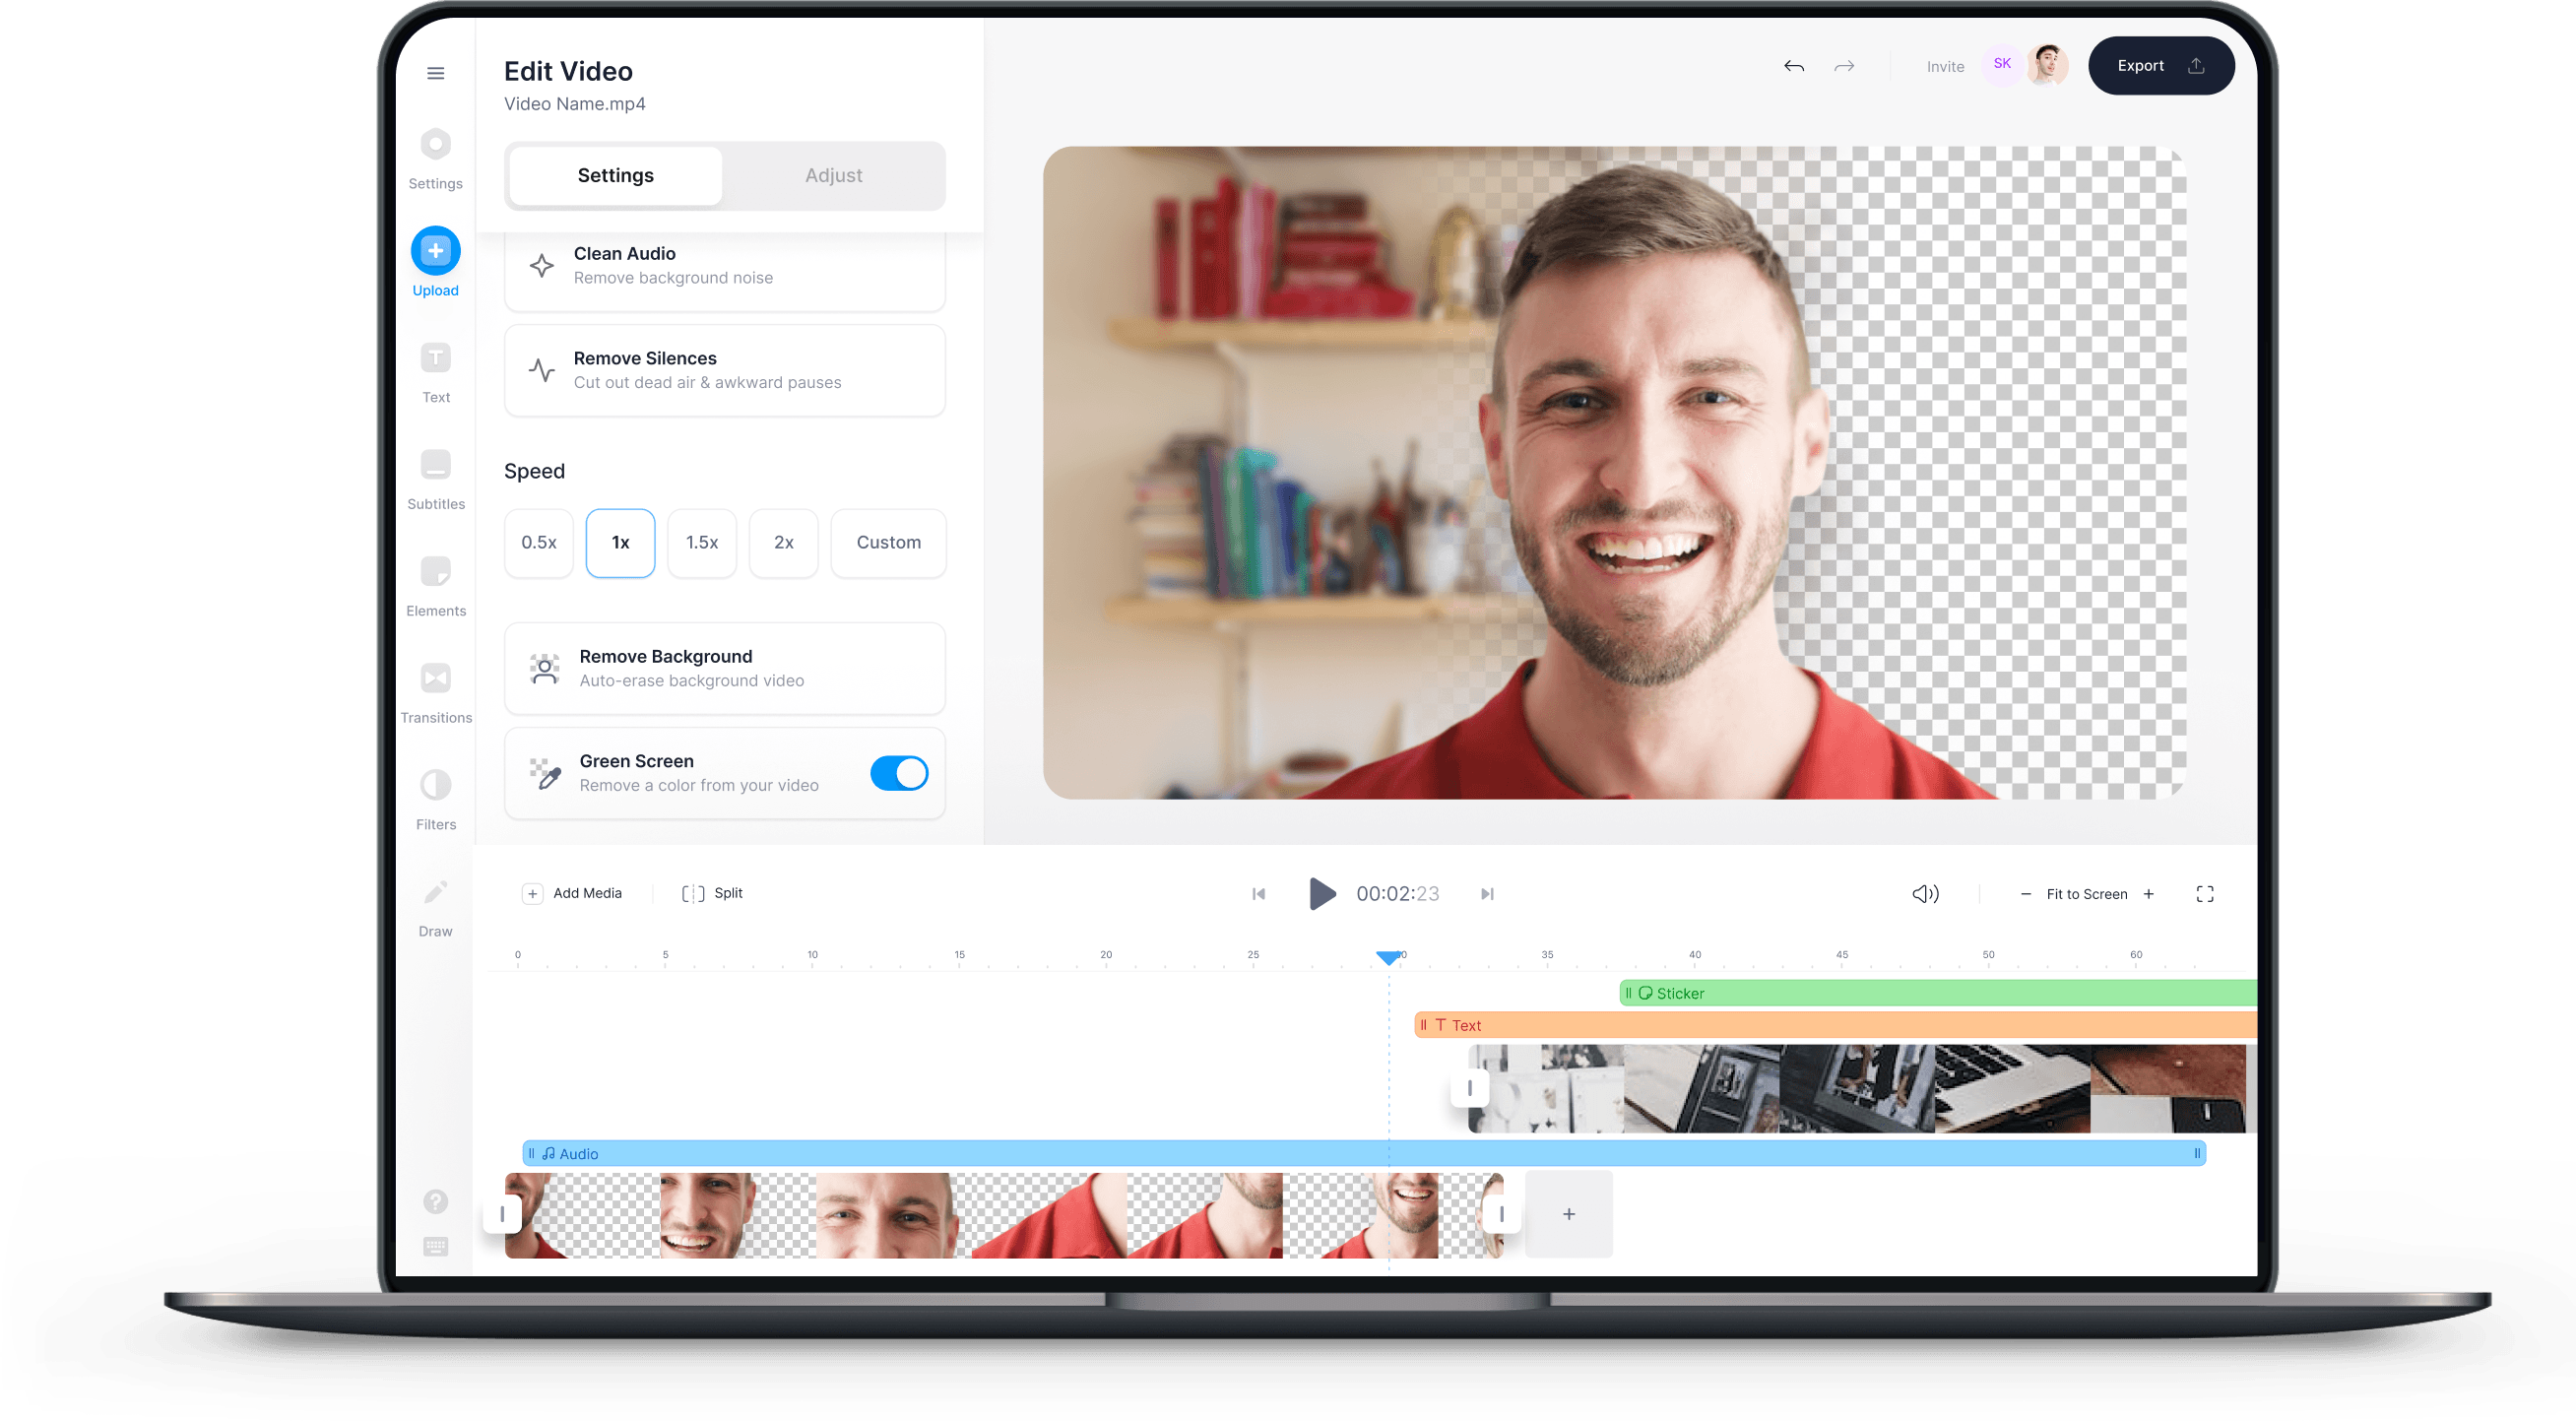 VEED là một công cụ chỉnh sửa video trực tuyến miễn phí với nhiều tính năng và hiệu ứng độc đáo. Tạo ra các video đẹp mắt chỉ trong vài phút với VEED và chia sẻ chúng với đám đông một cách dễ dàng.